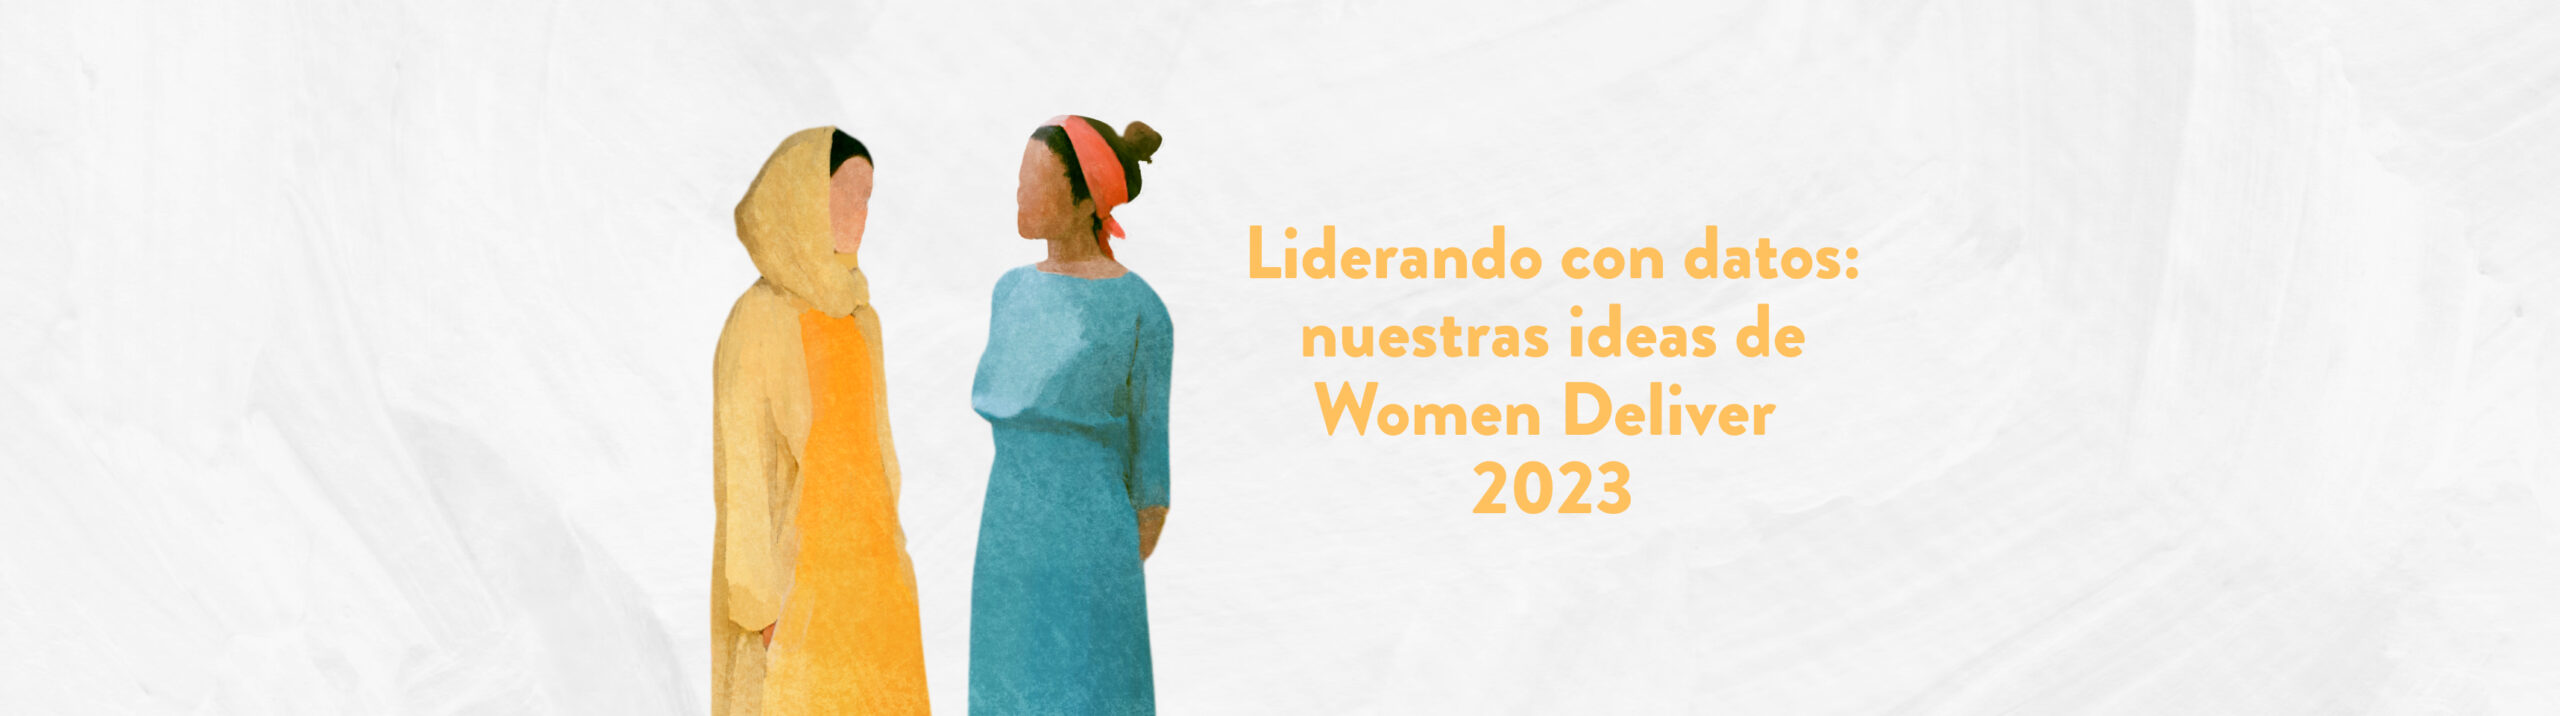 Liderando con datos: nuestras ideas de Women Deliver 2023